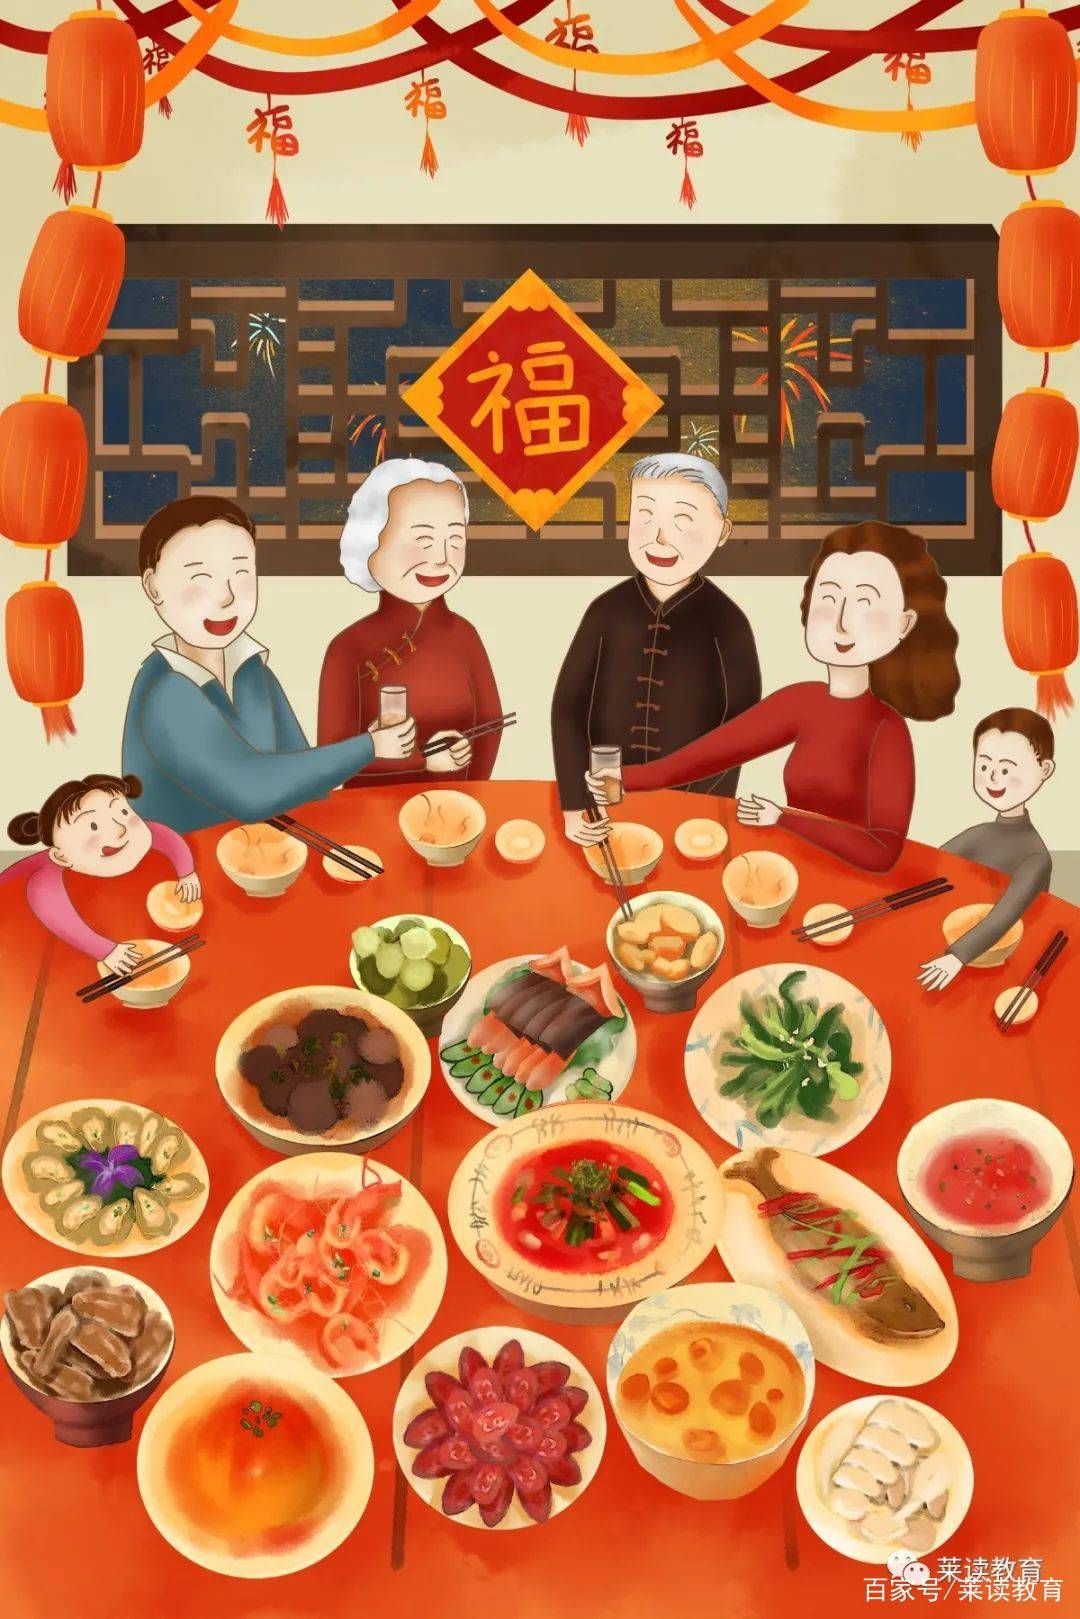 春节是家家户户团圆的日子,最温馨的就是一家人一起吃年夜饭.